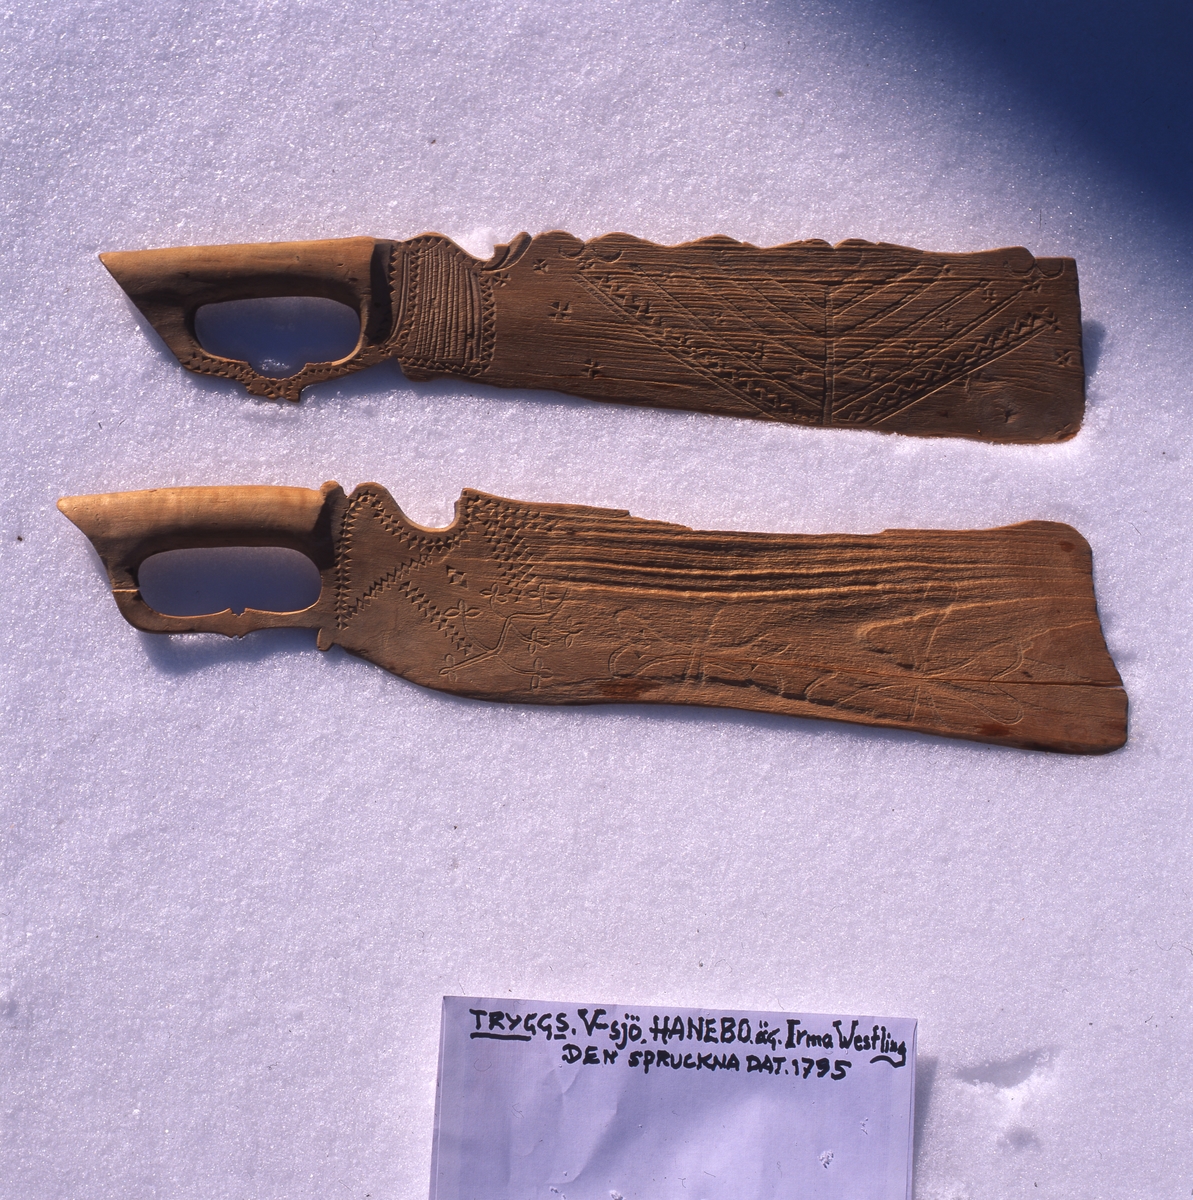 Snidade, omålade skäktknivar, Hanebo mars 2001.
Den spruckna är daterad till 1795, samma år som Rengsjö kyrka invigdes.